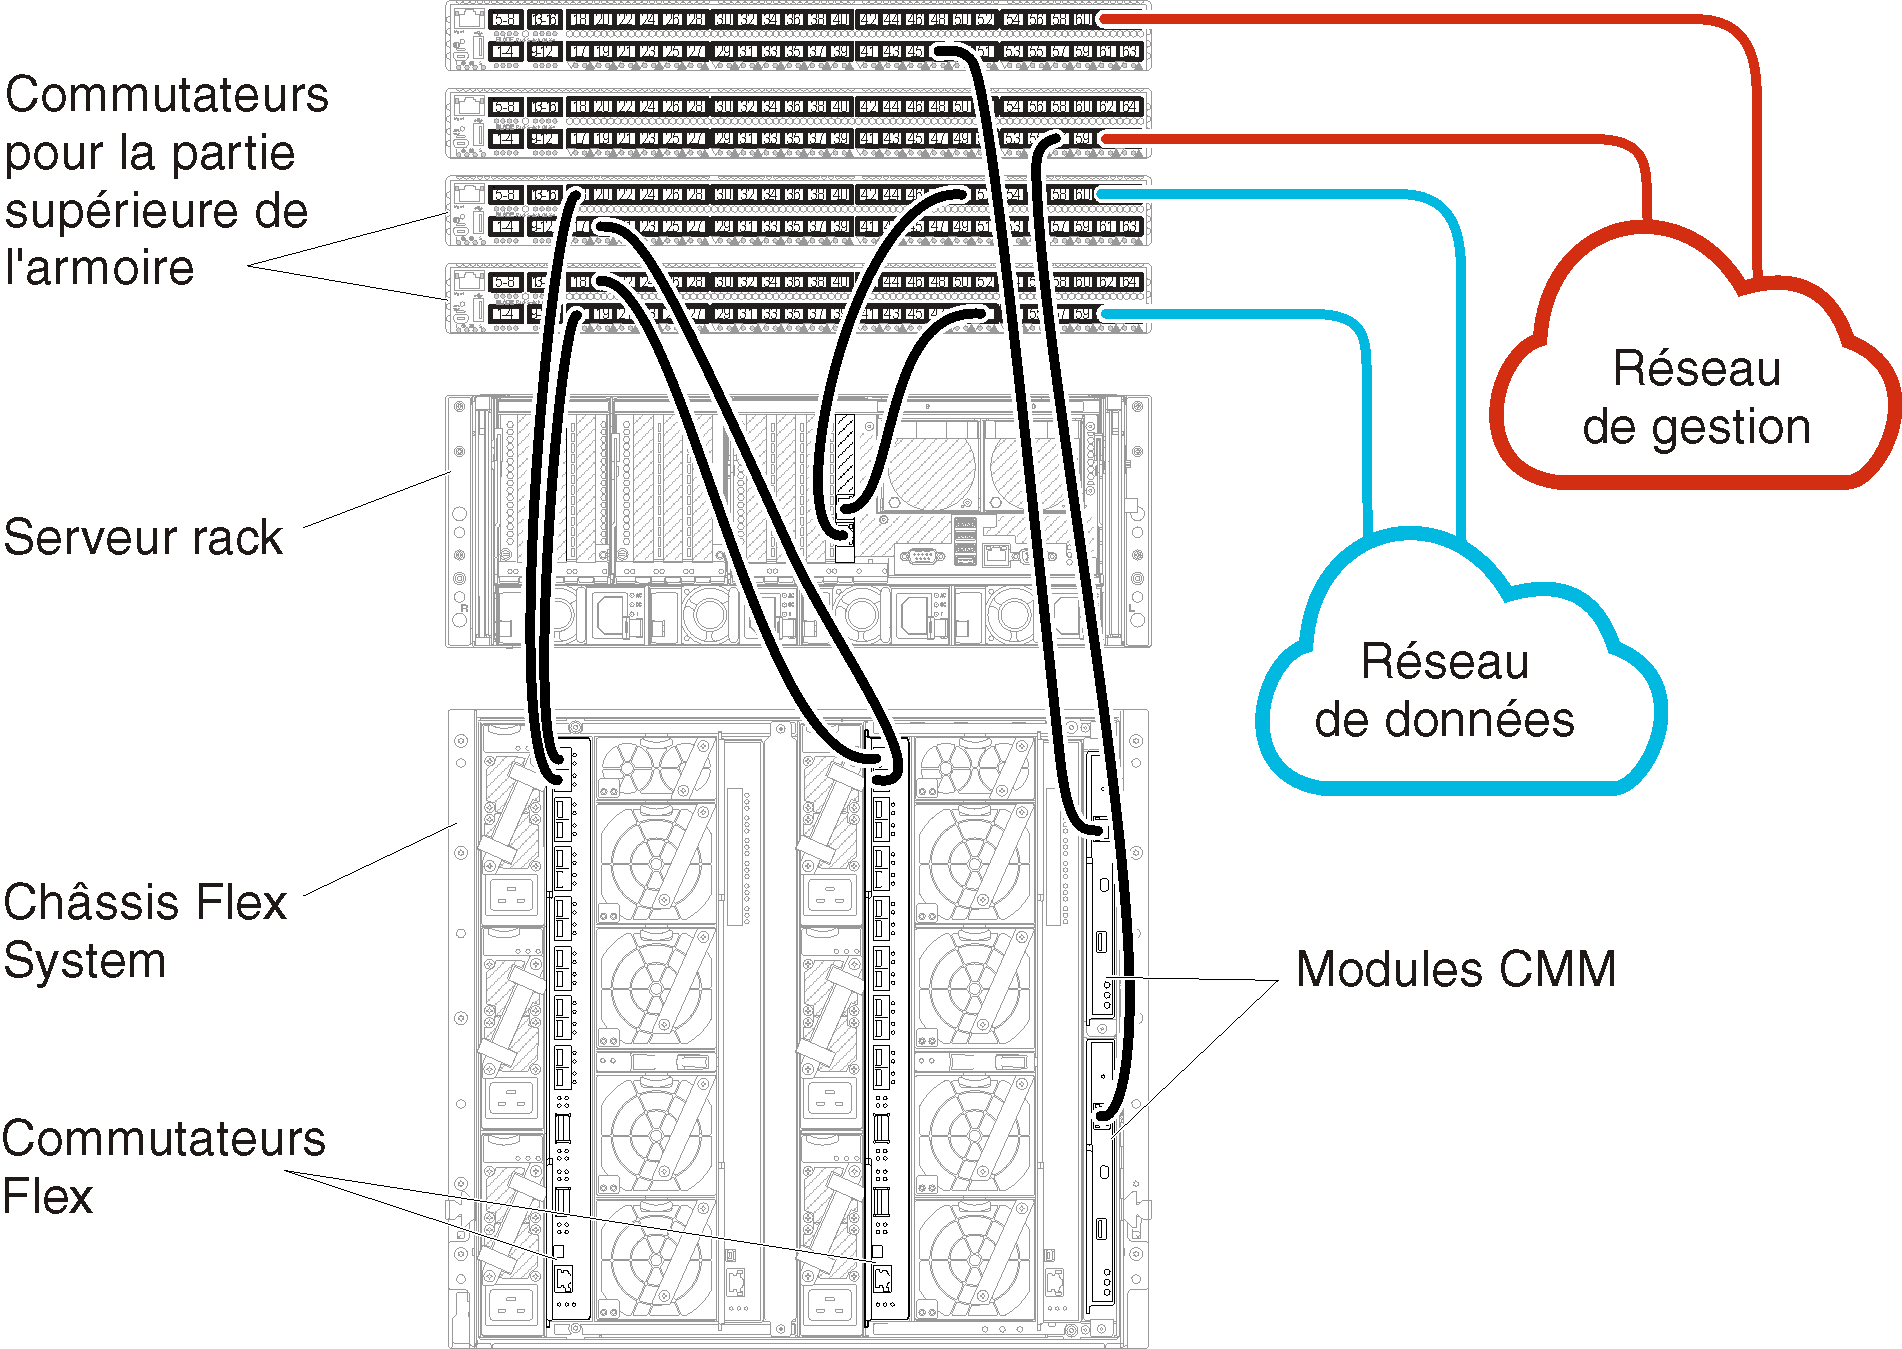 Illustre le câblage des Commutateurs Flex et des modules CMM sur les commutateurs de la partie supérieure de l'armoire pour des données séparées physiquement et des réseaux de gestion